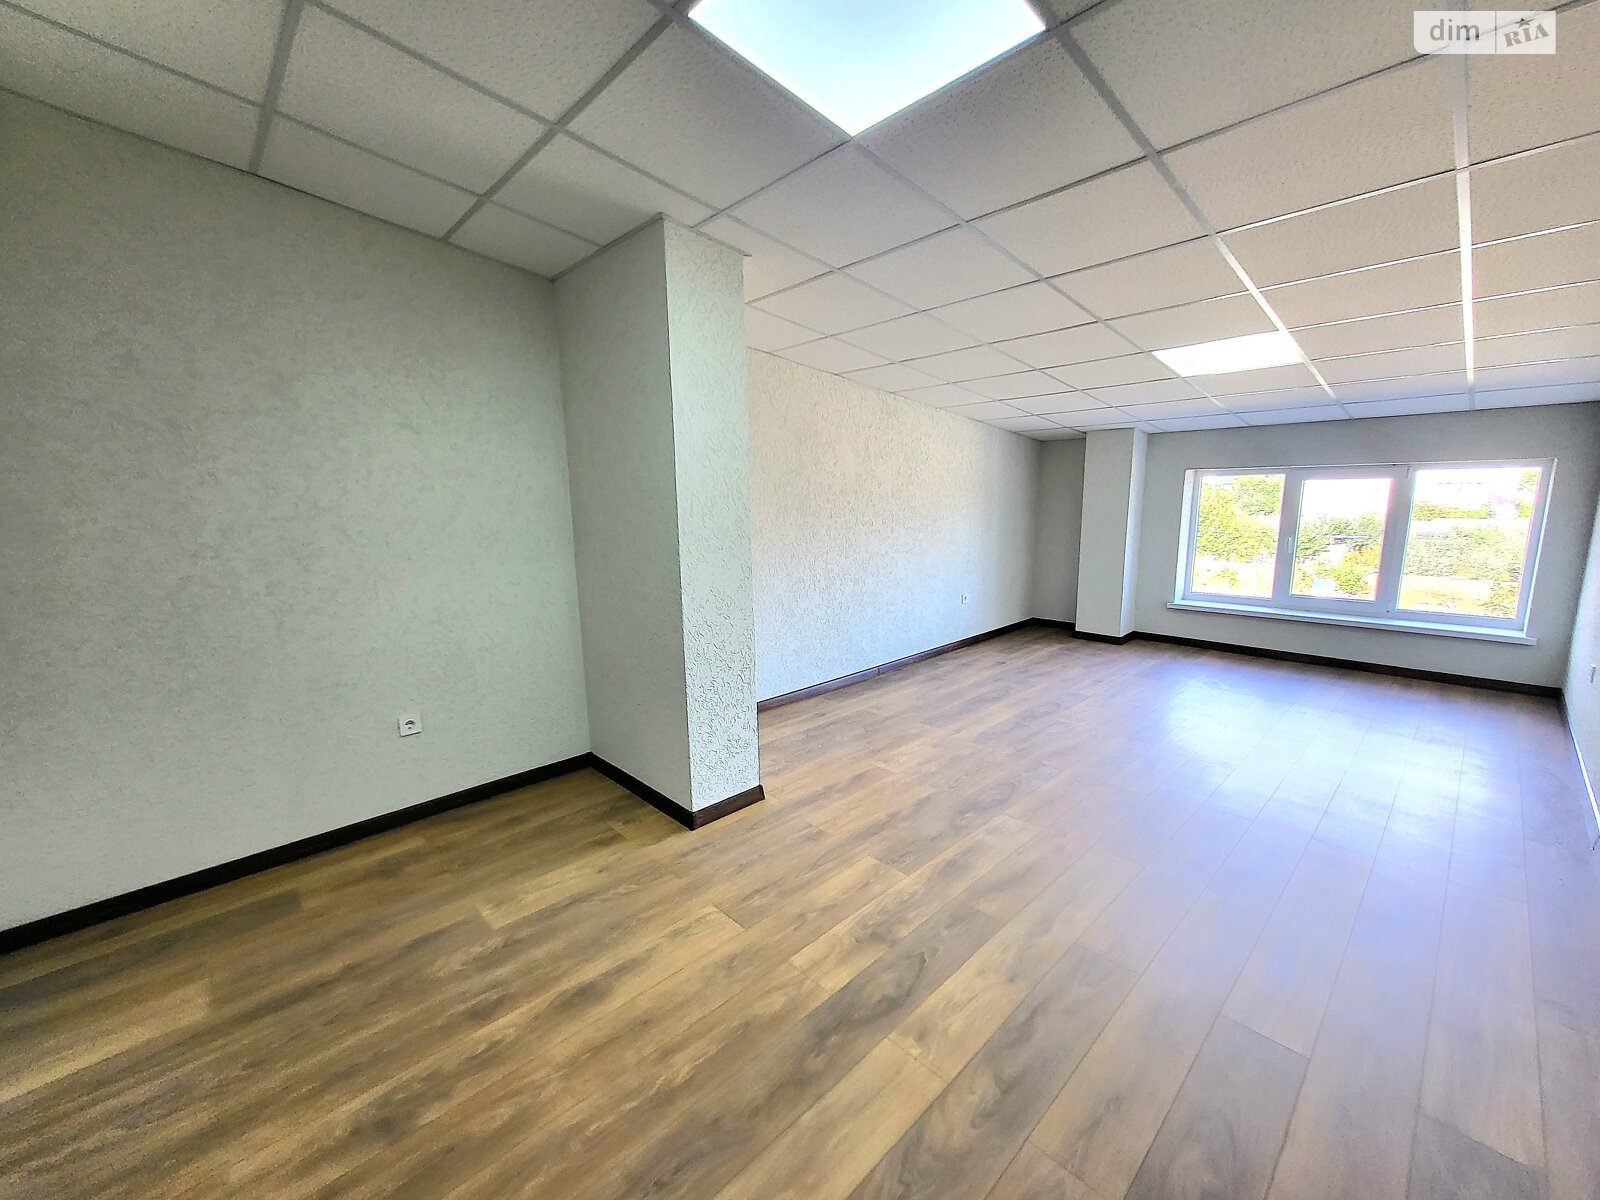 Аренда офисного помещения в Якушинцах, Хмельницьке шосе, помещений - 2, этаж - 2 фото 1